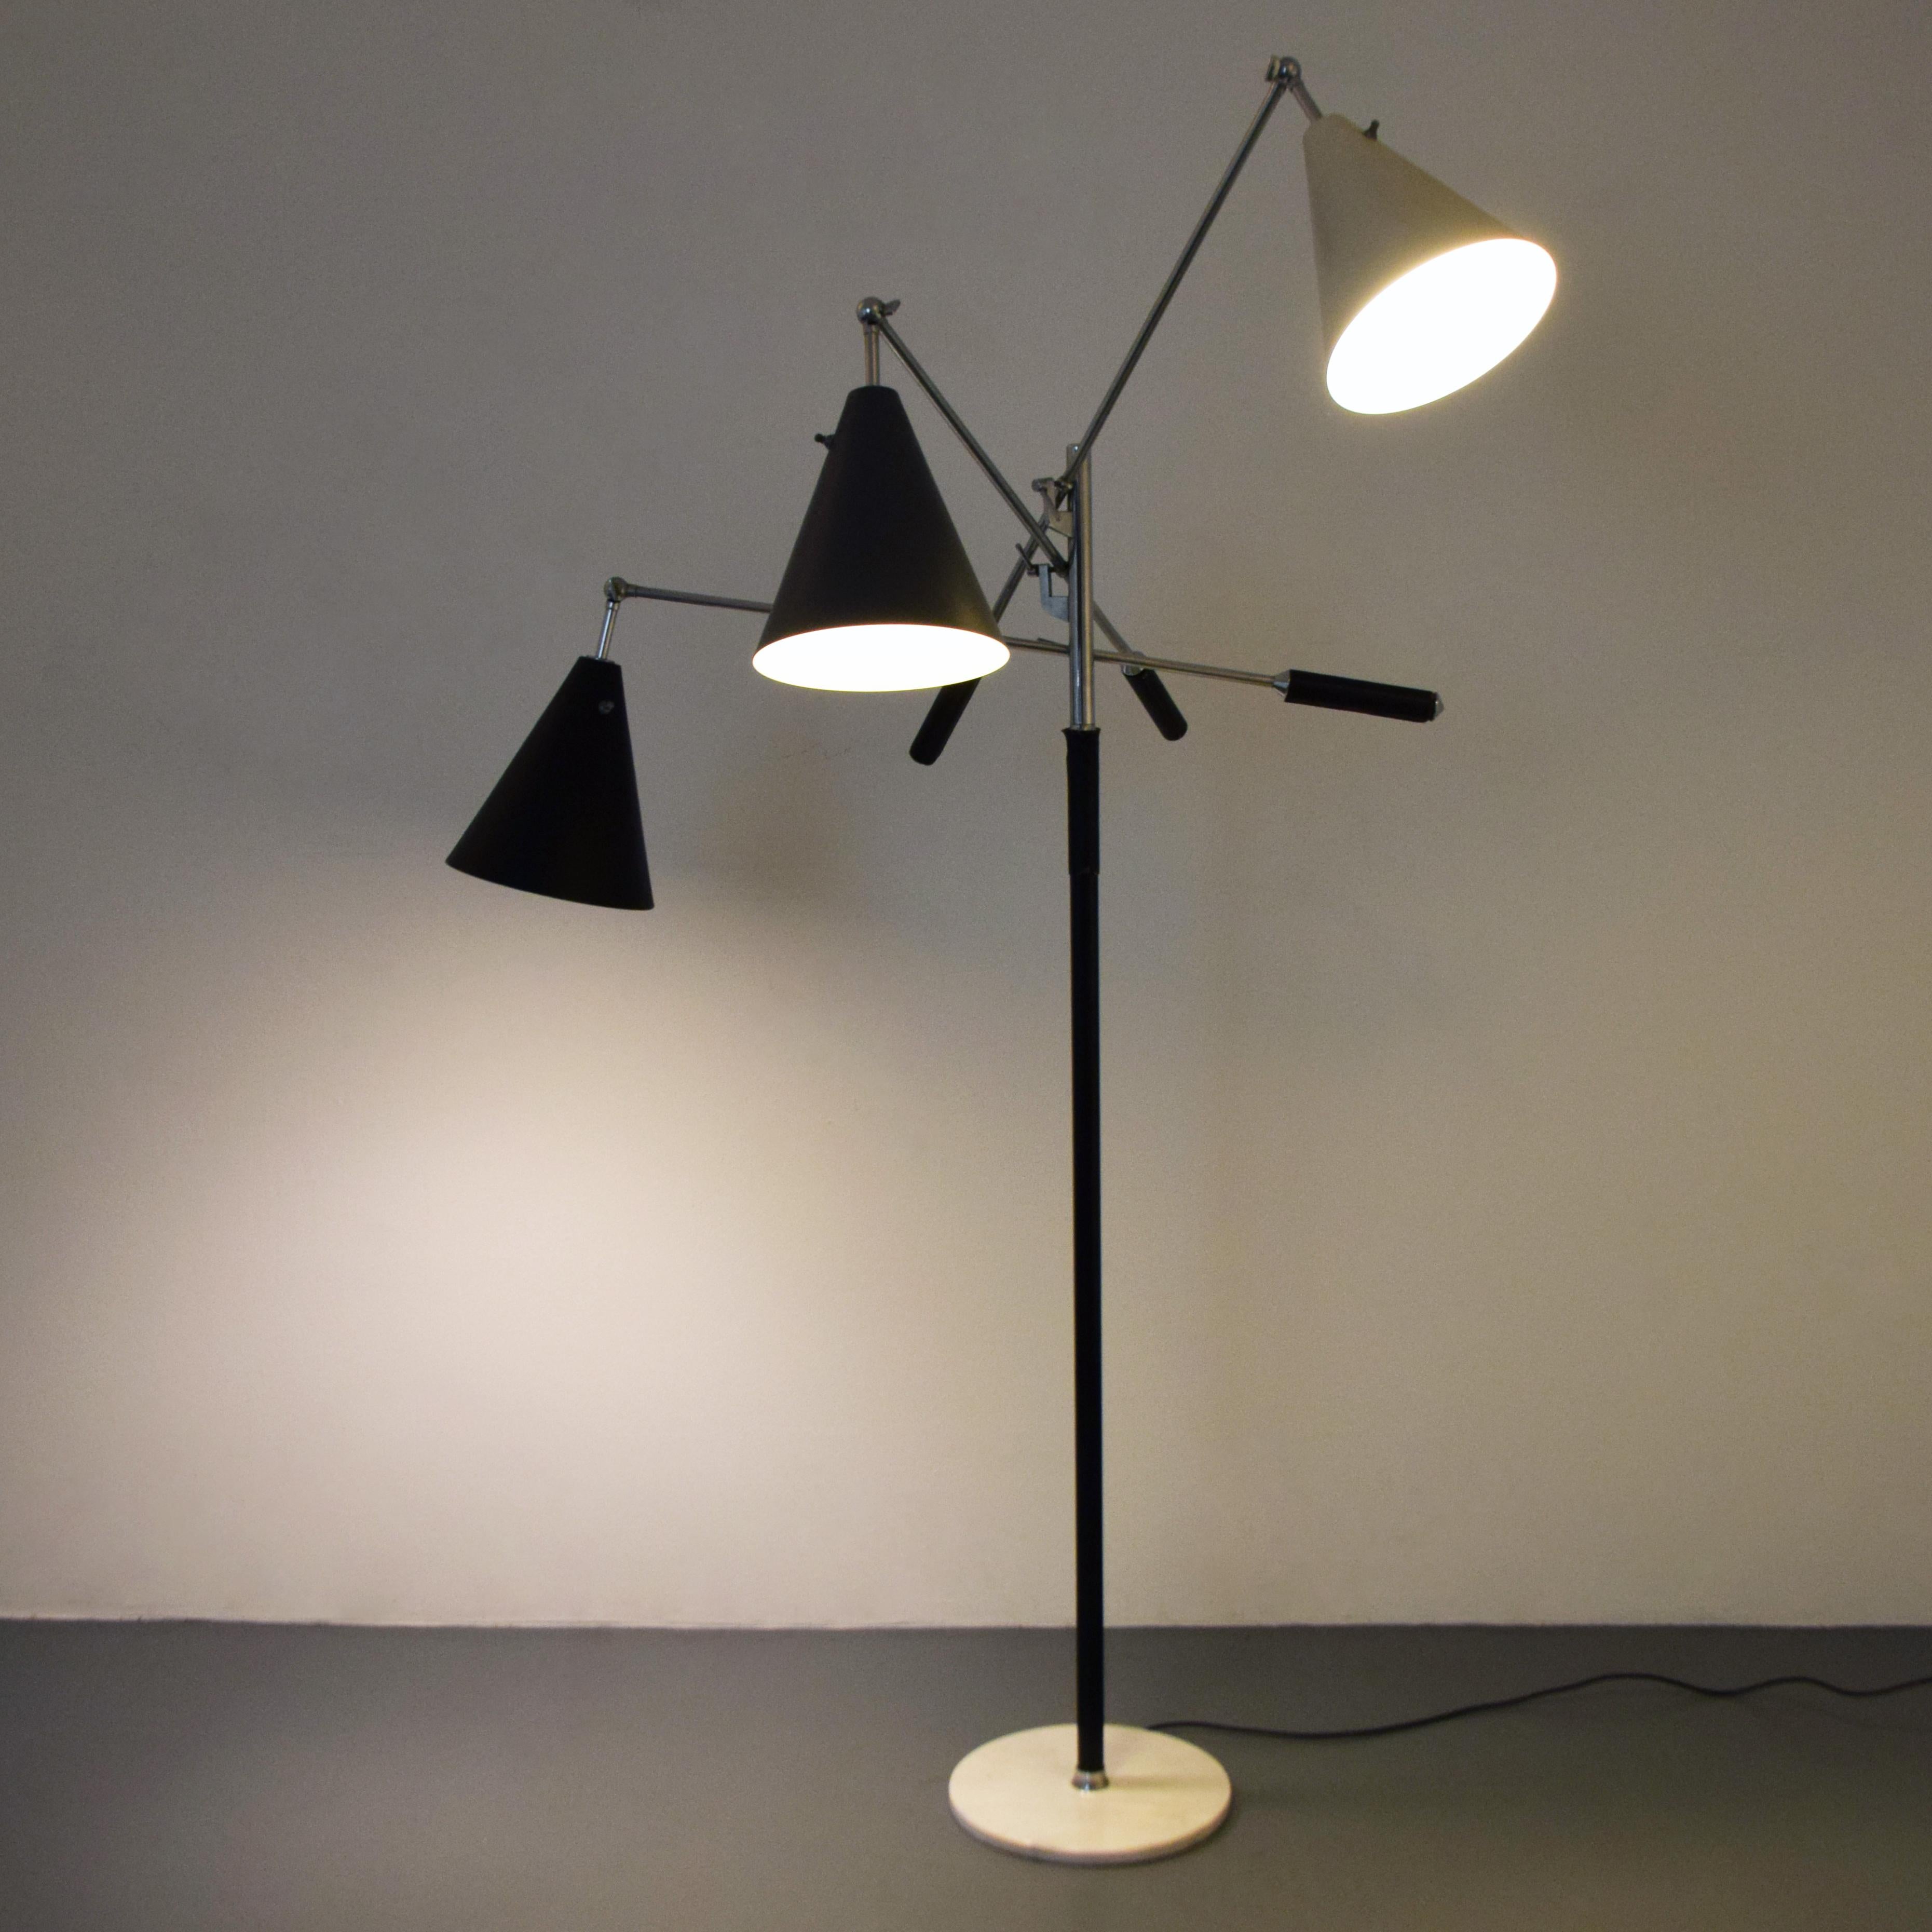 Italian Arredoluce “Triennale” Floor Lamp For Sale